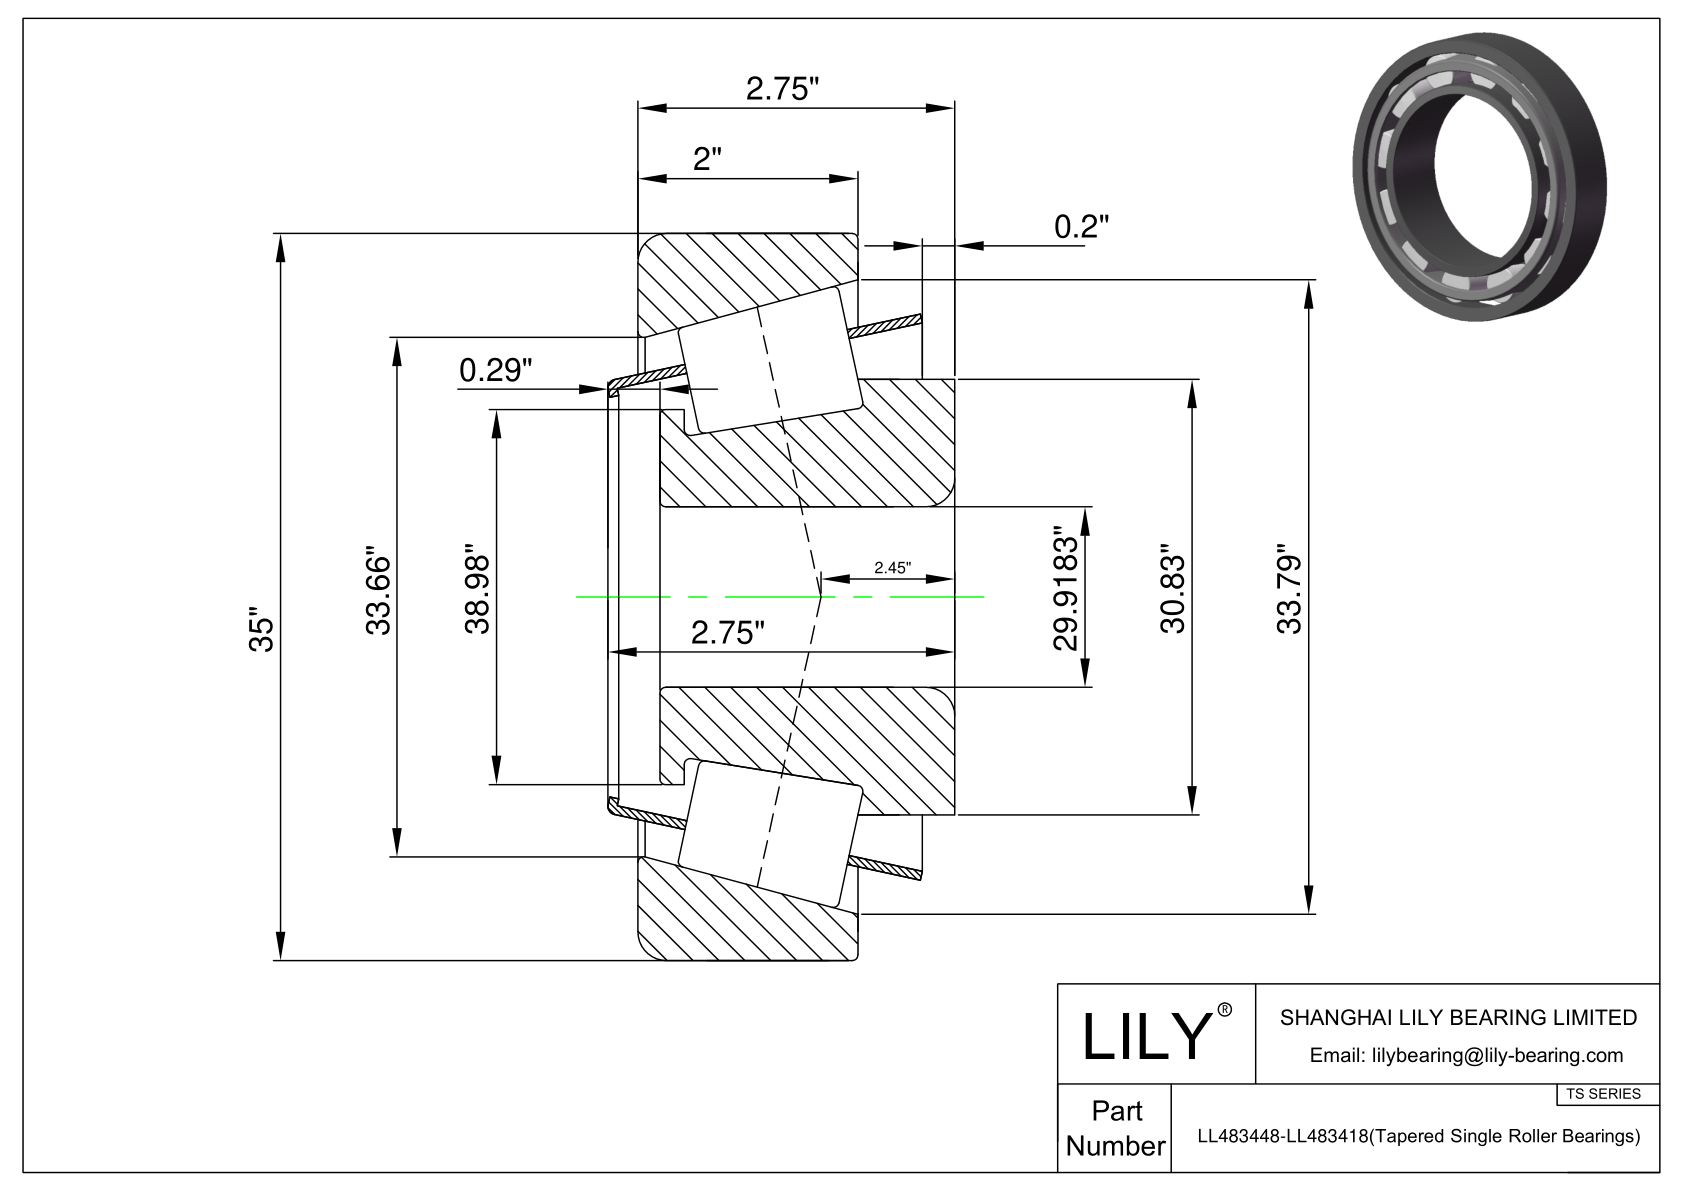 LL483448-LL483418 TS系列(圆锥单滚子轴承)(英制) CAD图形